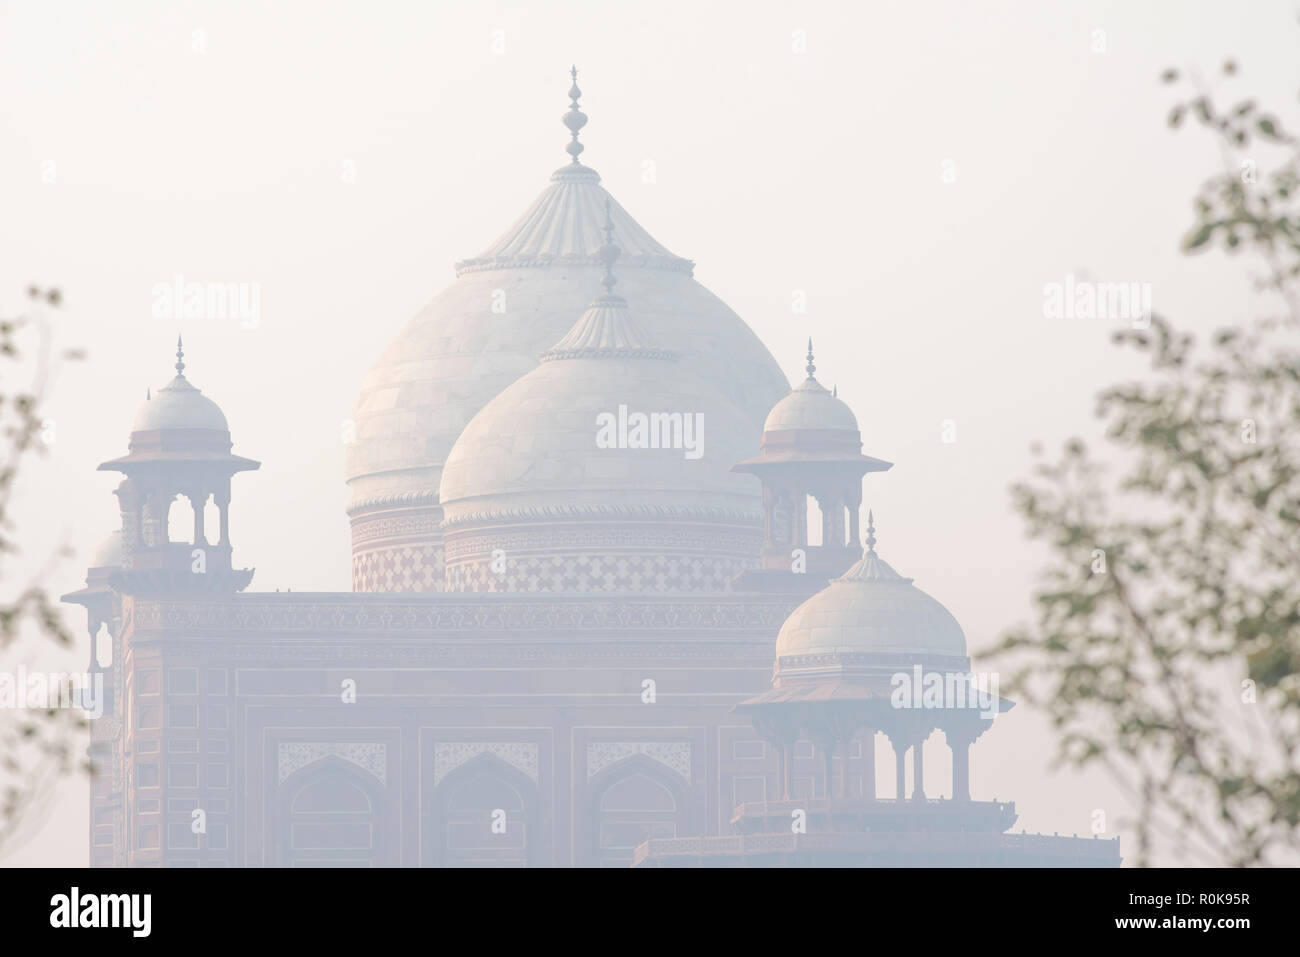 Cinq dômes spectaculaires avec perfect arches du Mihman Khana connu sous le nom de guest house dans le Taj Mahal complexe dans une atmosphère brumeuse matinée d'hiver Banque D'Images